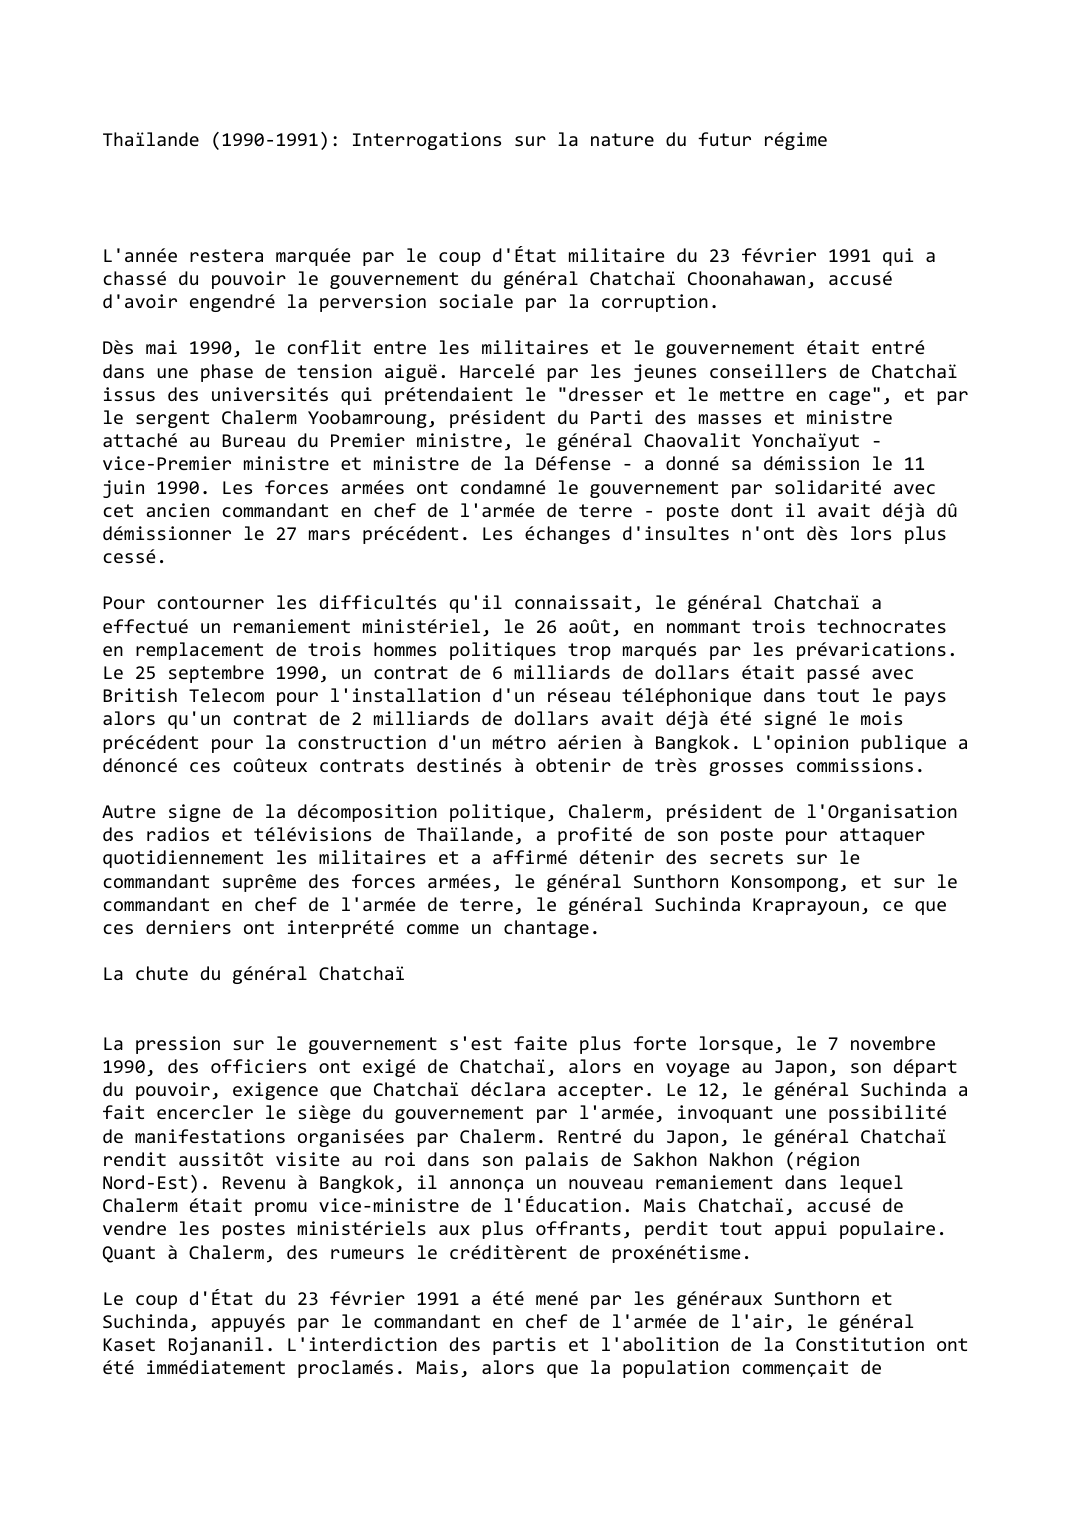 Prévisualisation du document Thaïlande (1990-1991): Interrogations sur la nature du futur régime